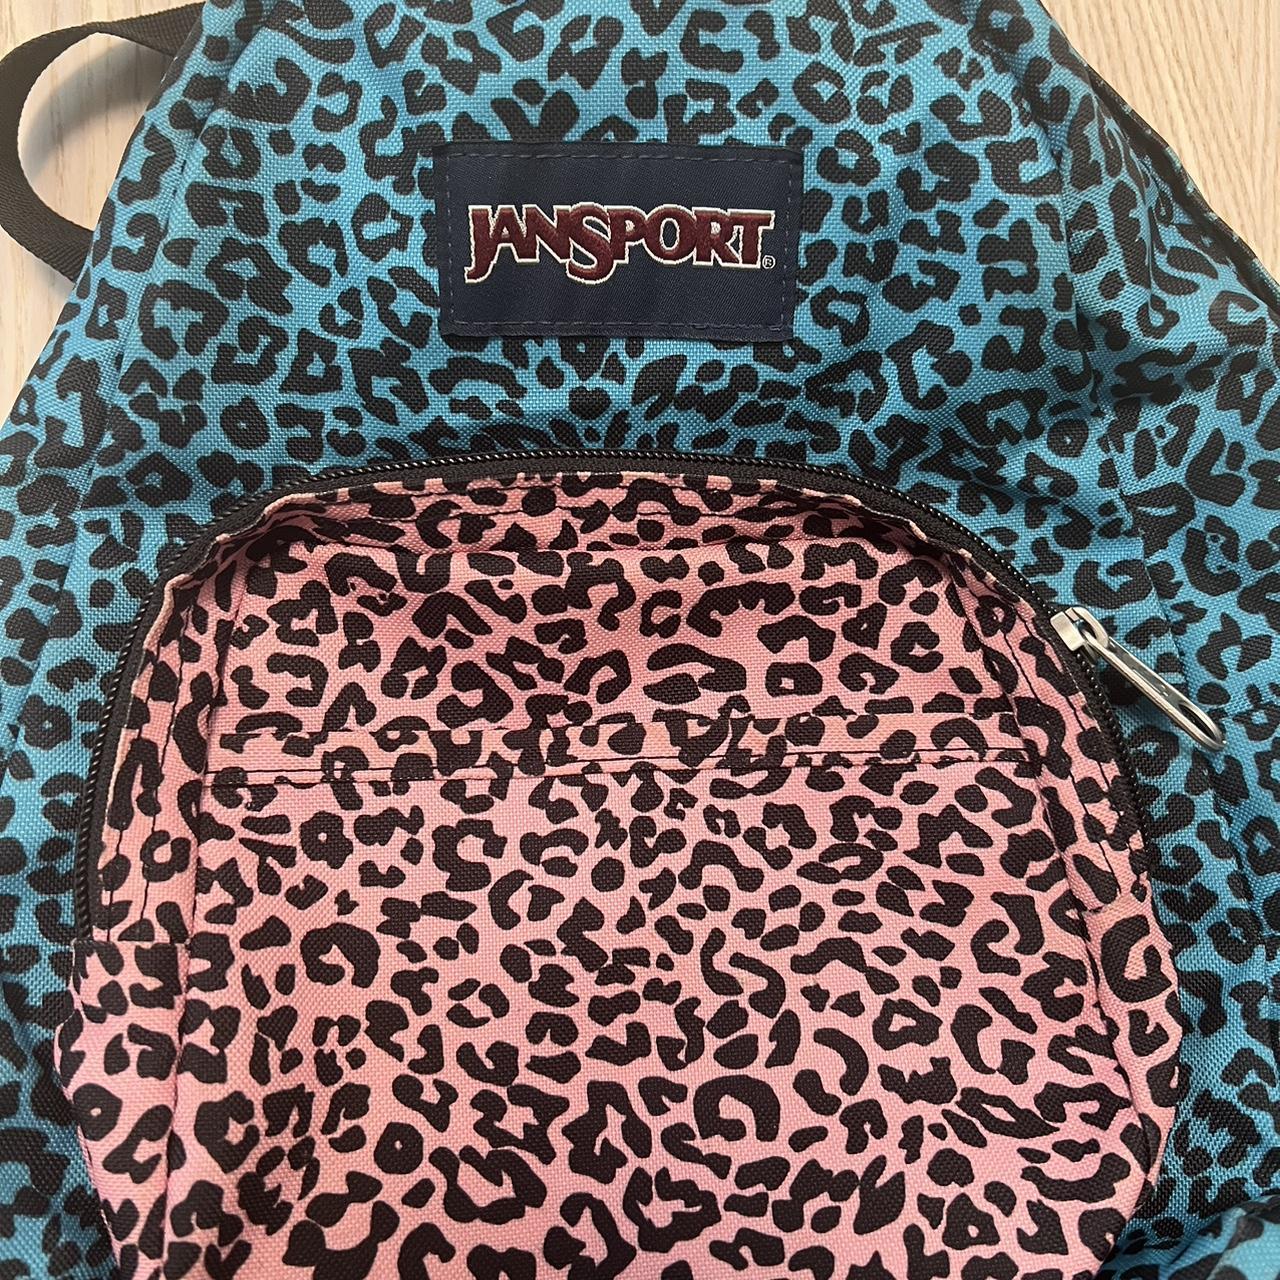 LC Lauren Conrad Pink Mini Backpack Baby Pink & - Depop